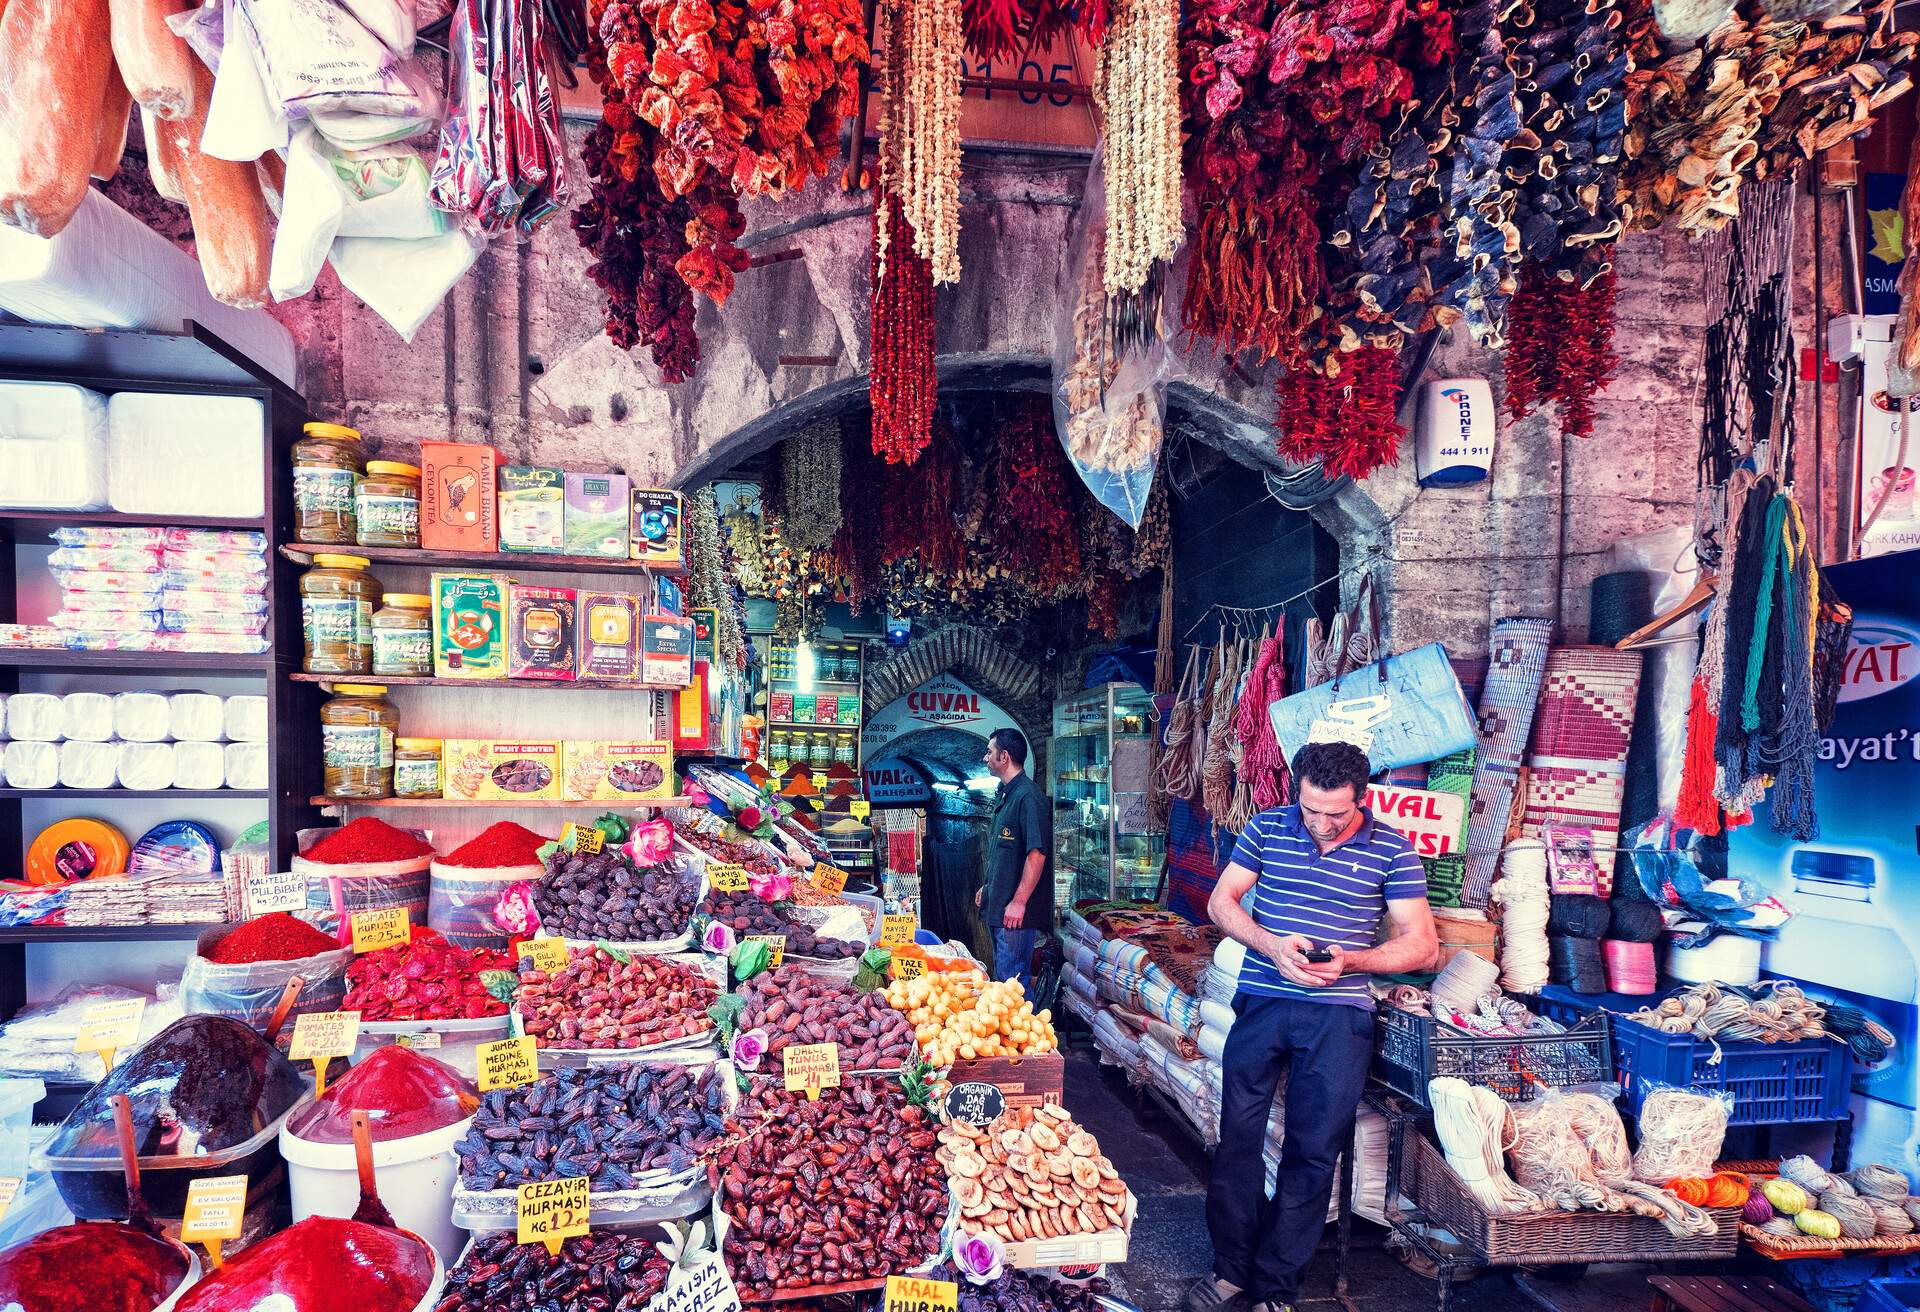 DEST_TURKEY_ISTANBUL_SPICE BAZAAR_The Spice Bazaar in Istanbul, Turkey_GettyImages-624930732